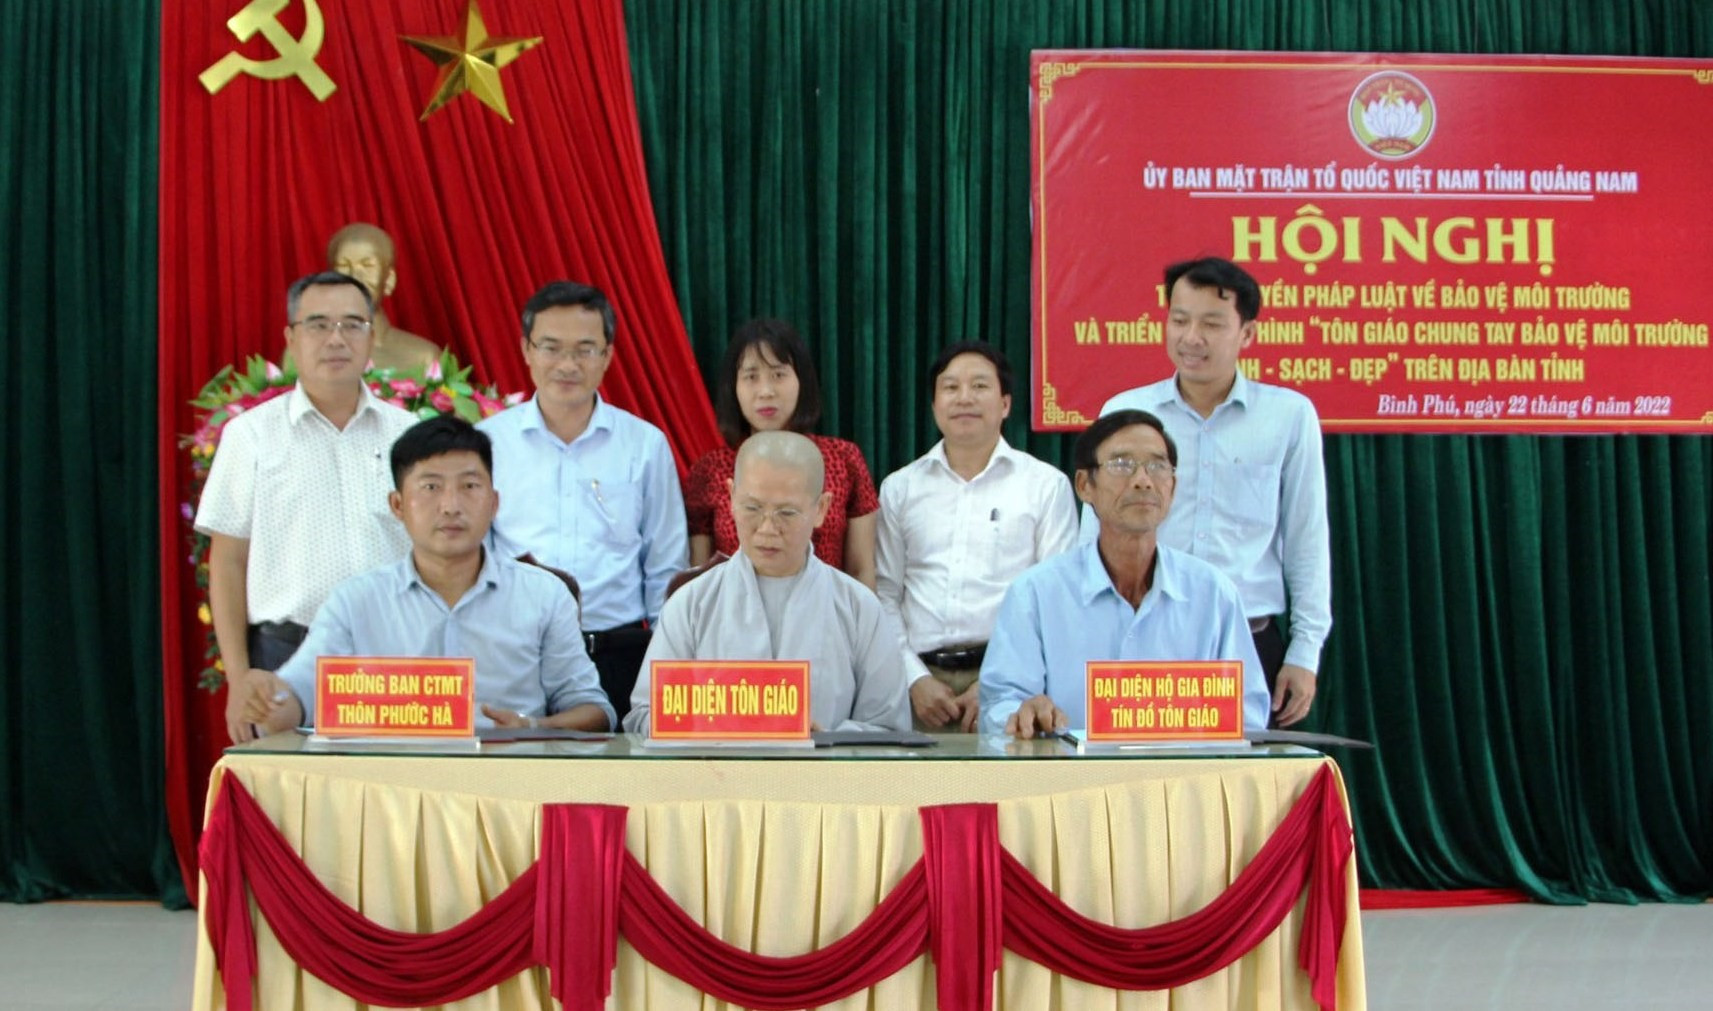 Chùa Phước Quang xã Bình Phú, huyện Thăng Bình ký cam kết chung tay bảo vệ môi trường.